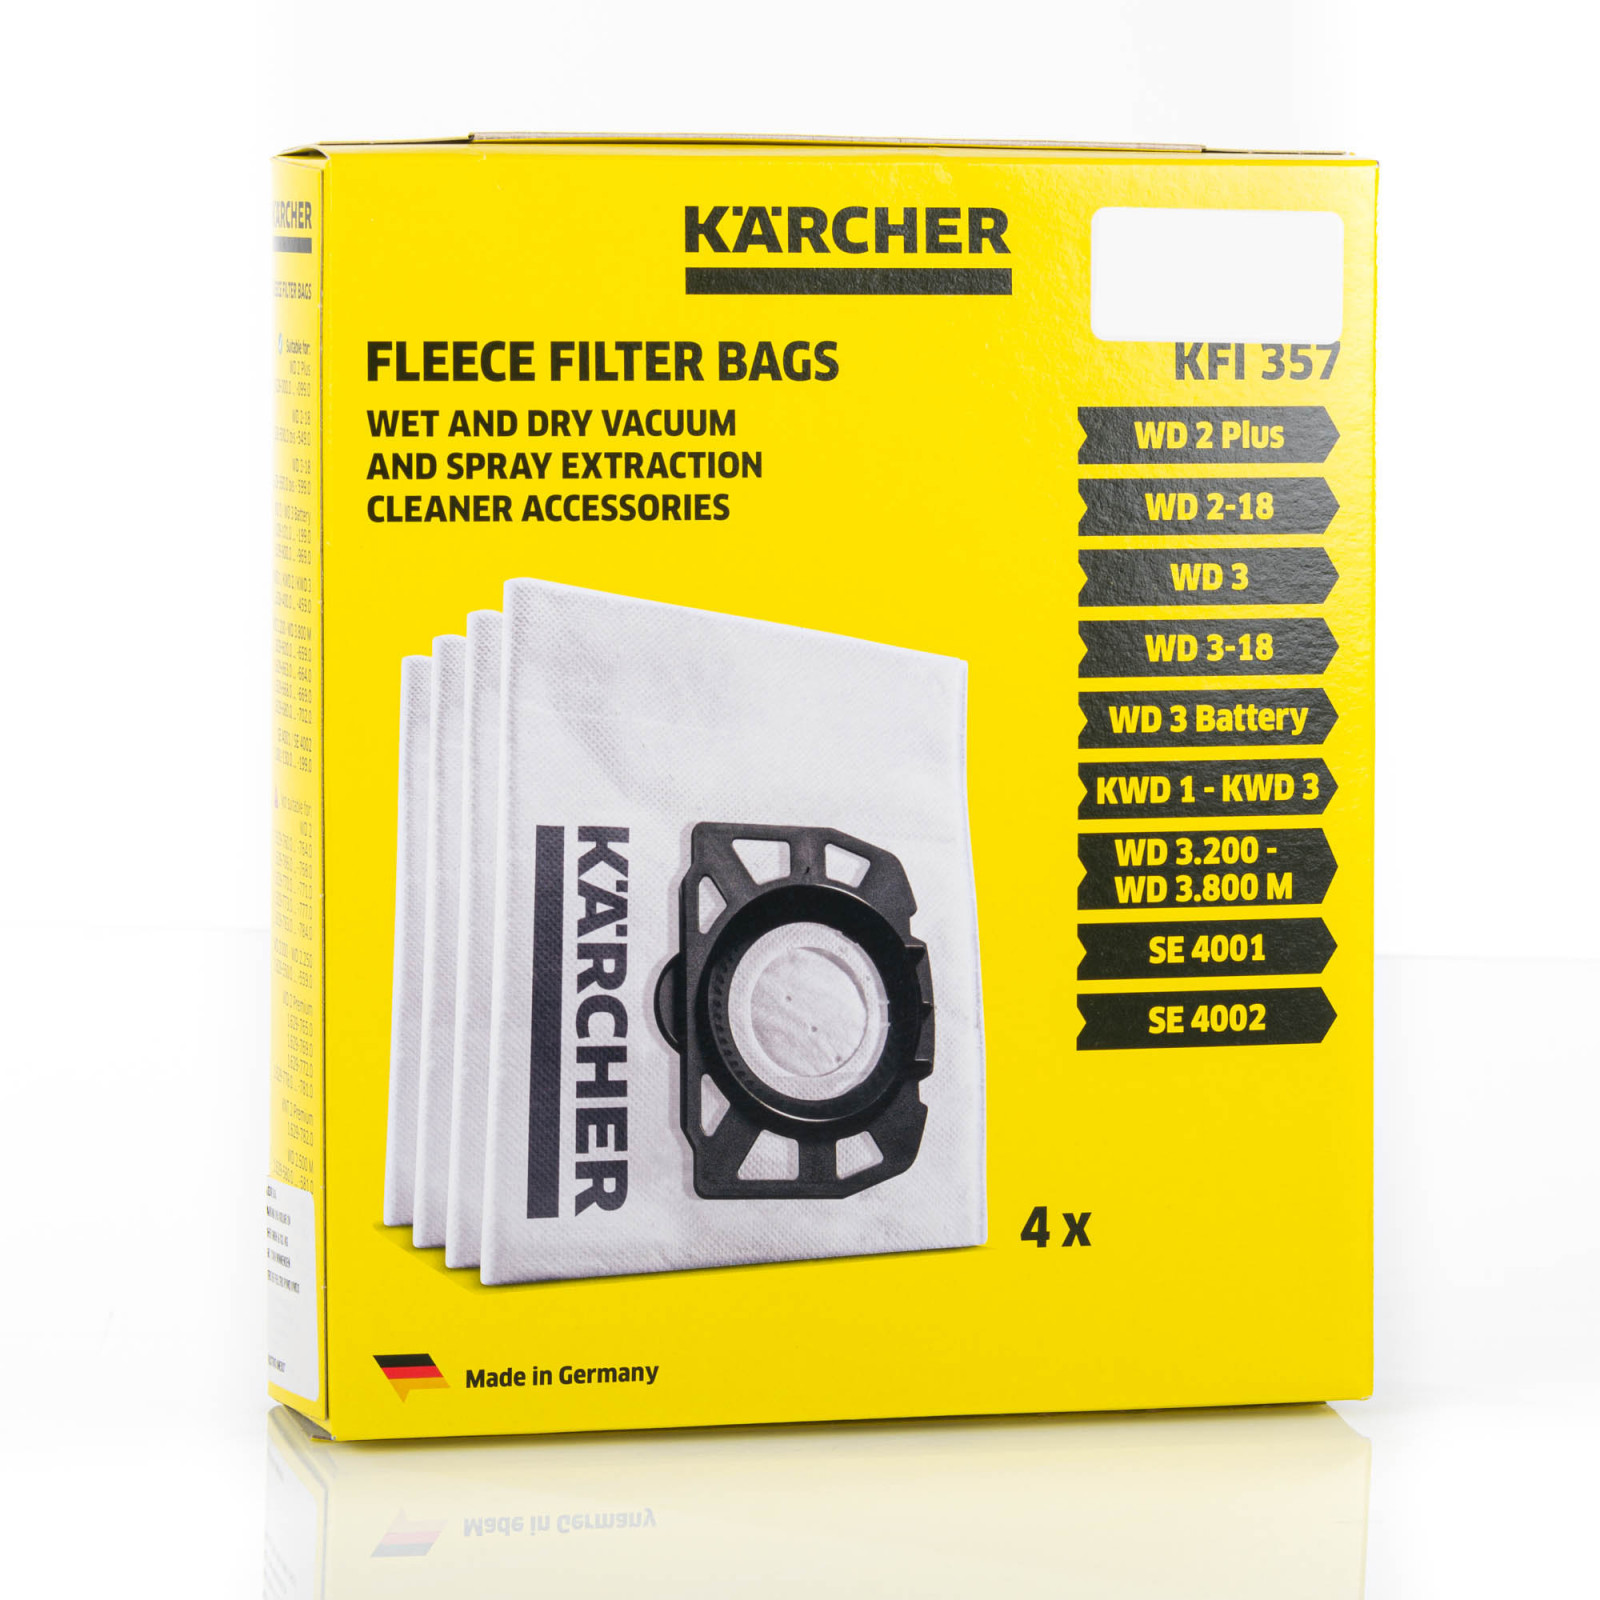  Kärcher FC 5 Limpiador eléctrico para suelos duros